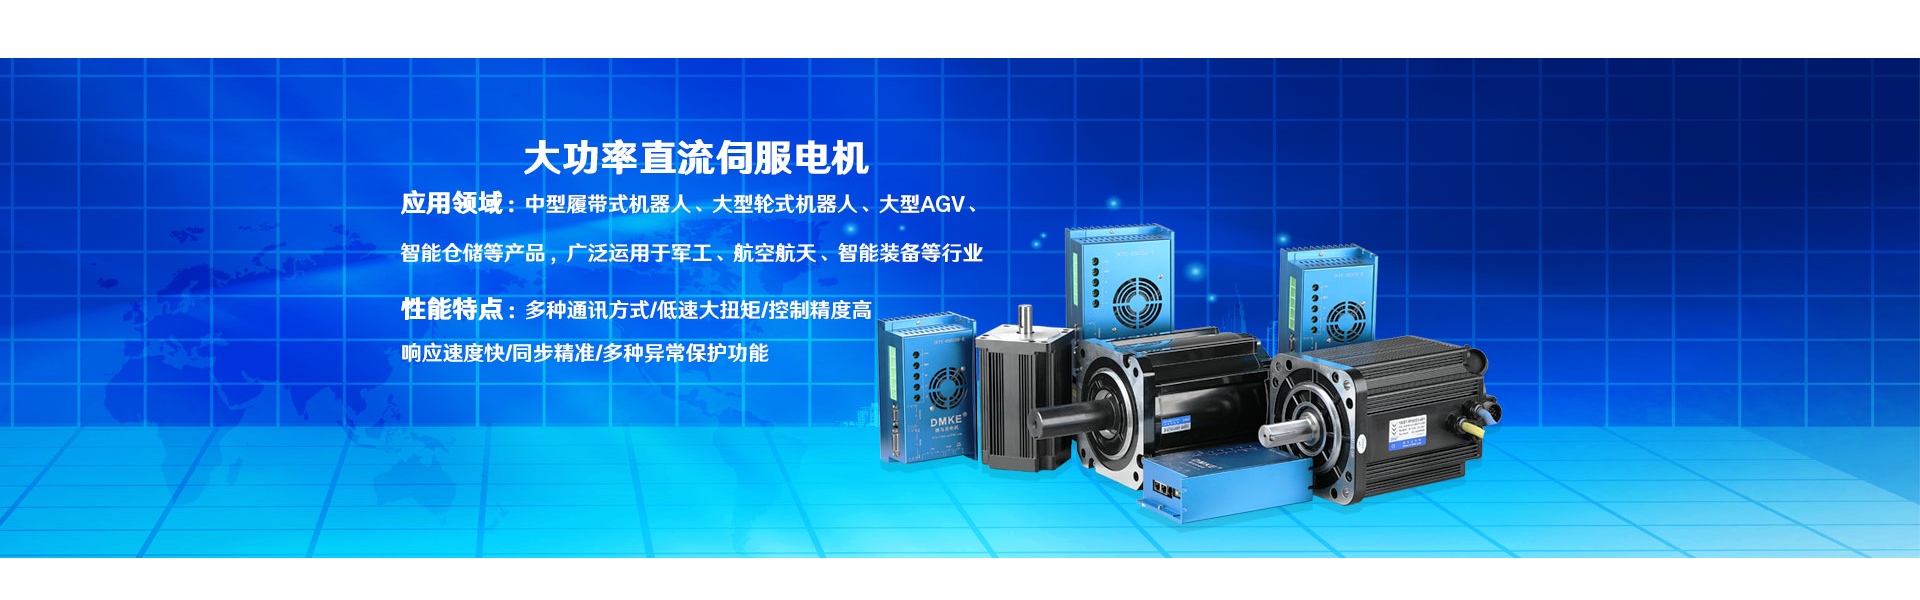 モーター、dcモーター、ブラシレスdcモーター,Dongguan Joy Machinery Manufacturing Co.,Ltd.